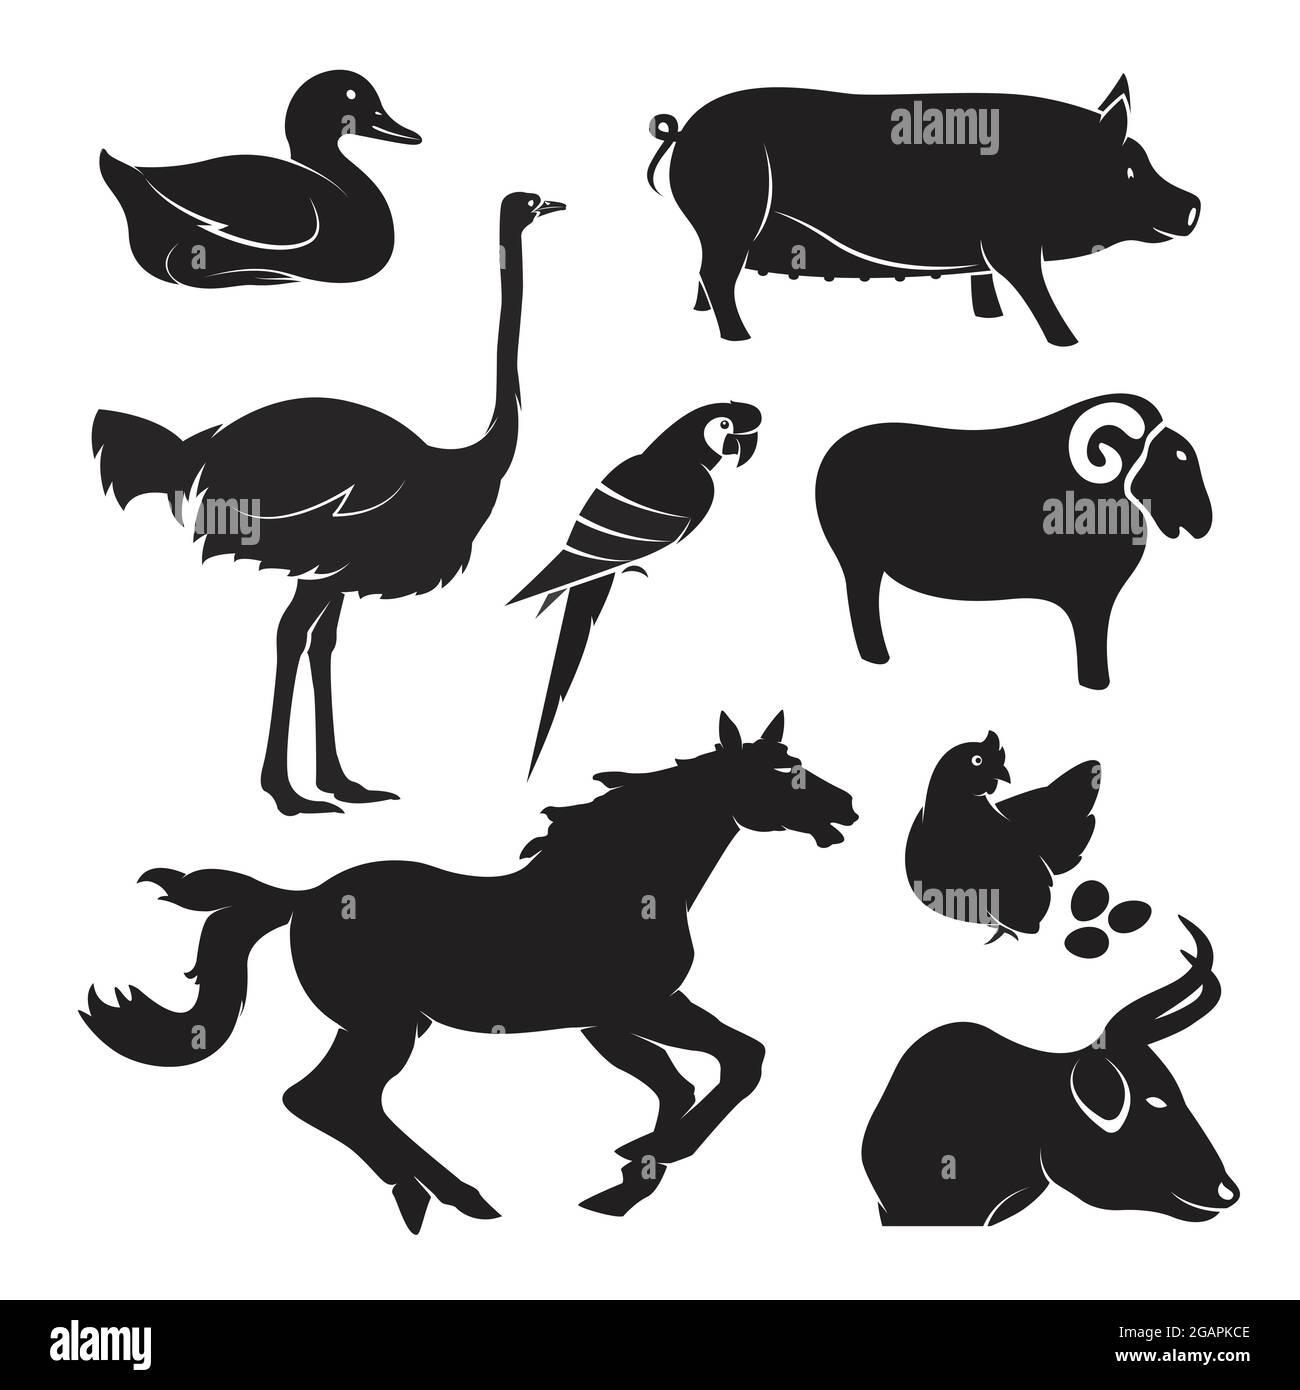 Animaux de ferme vectoriels sur fond blanc, cheval,porc,poulet,oiseau,canard,oie,vache,mouton. Illustration vectorielle superposée facile à modifier. Animaux. Illustration de Vecteur